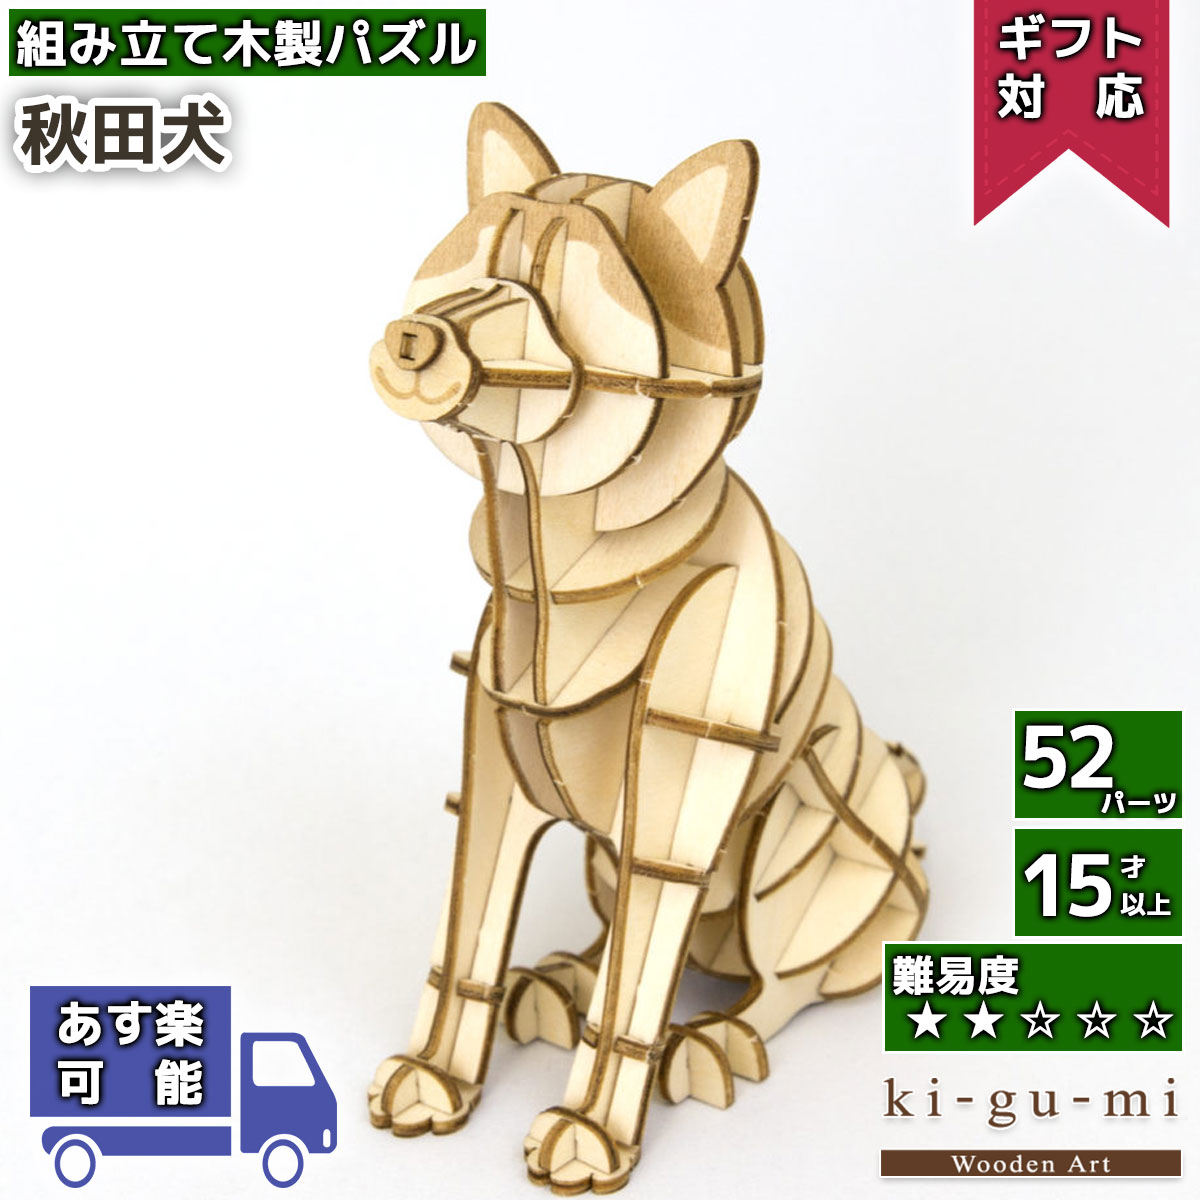 ついに入荷 ki-gu-mi ミニチュアシュナウザー 木製組立パズル kigumi キグミ 木組 合板 型抜き済 説明書付き 中国製 3Dパズル 